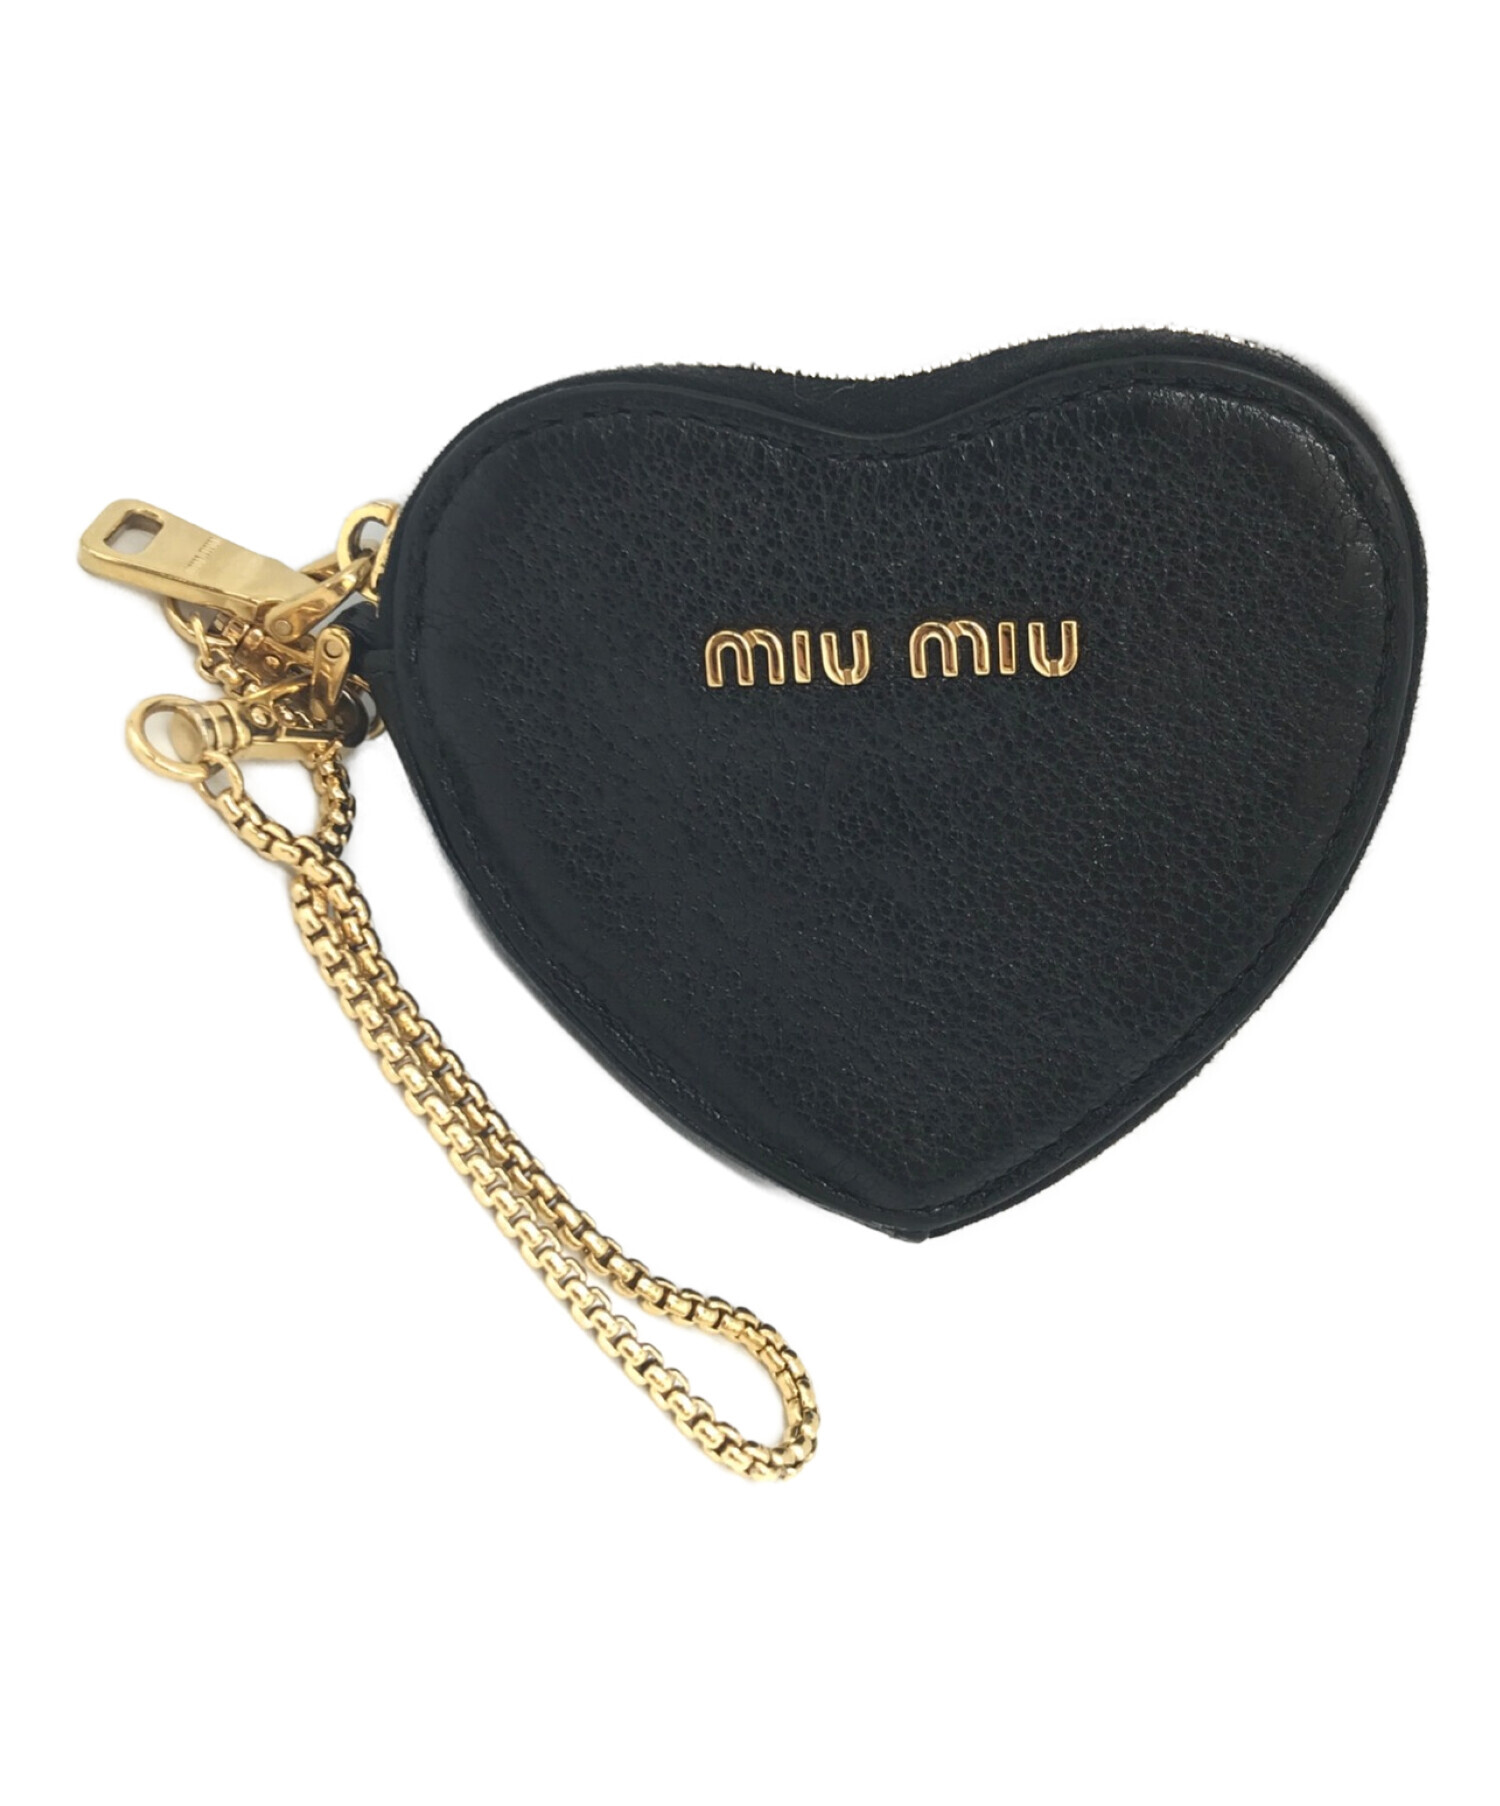 MIU MIU (ミュウミュウ) ハート型コインケース ブラック